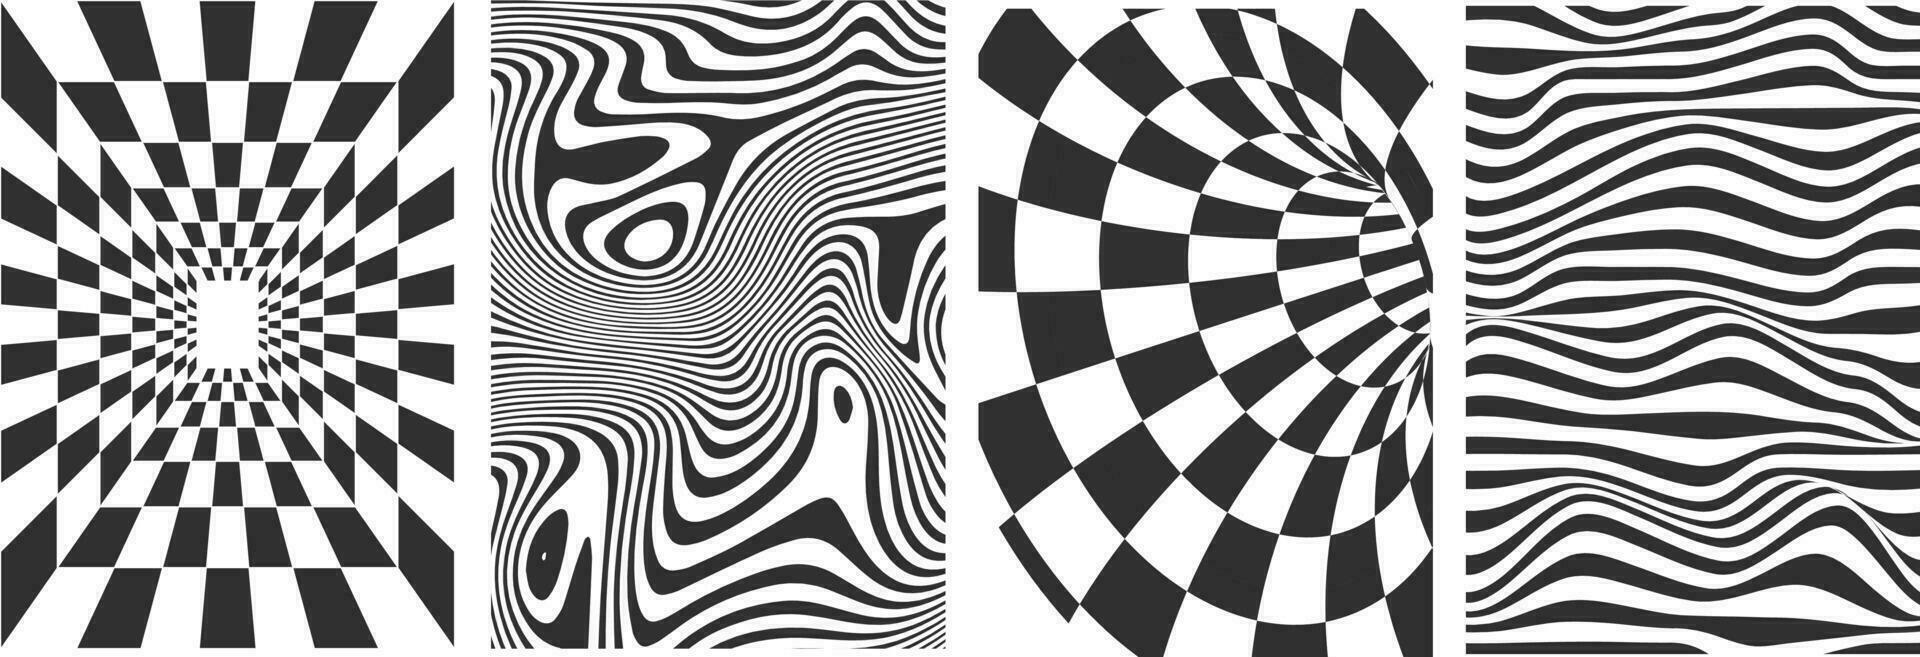 uppsättning av svart och vit former, bakgrunder med Vinka mönster. mallar för baner, omslag, affisch, vykort. abstrakt svart och vit böjd mönster isolerat på vit bakgrund. optisk 3d konst. vektor